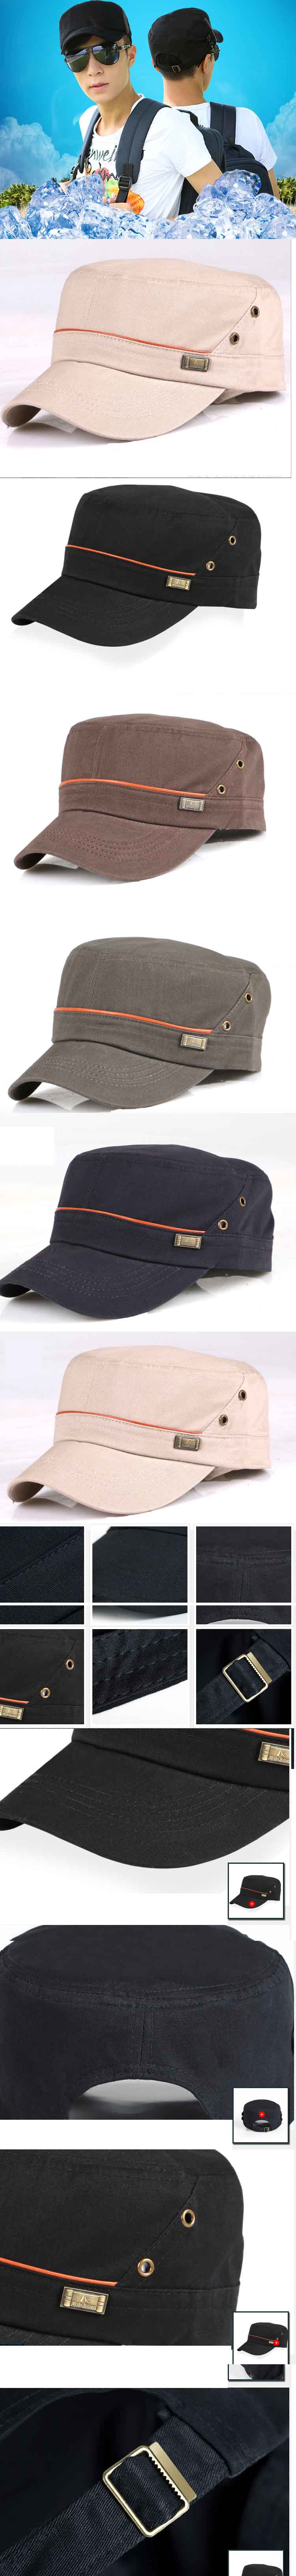 cari topi pria vintage keren ? di pfp store ada ratusan model topi vintage untuk pria, klik dan pesan online sekarang juga